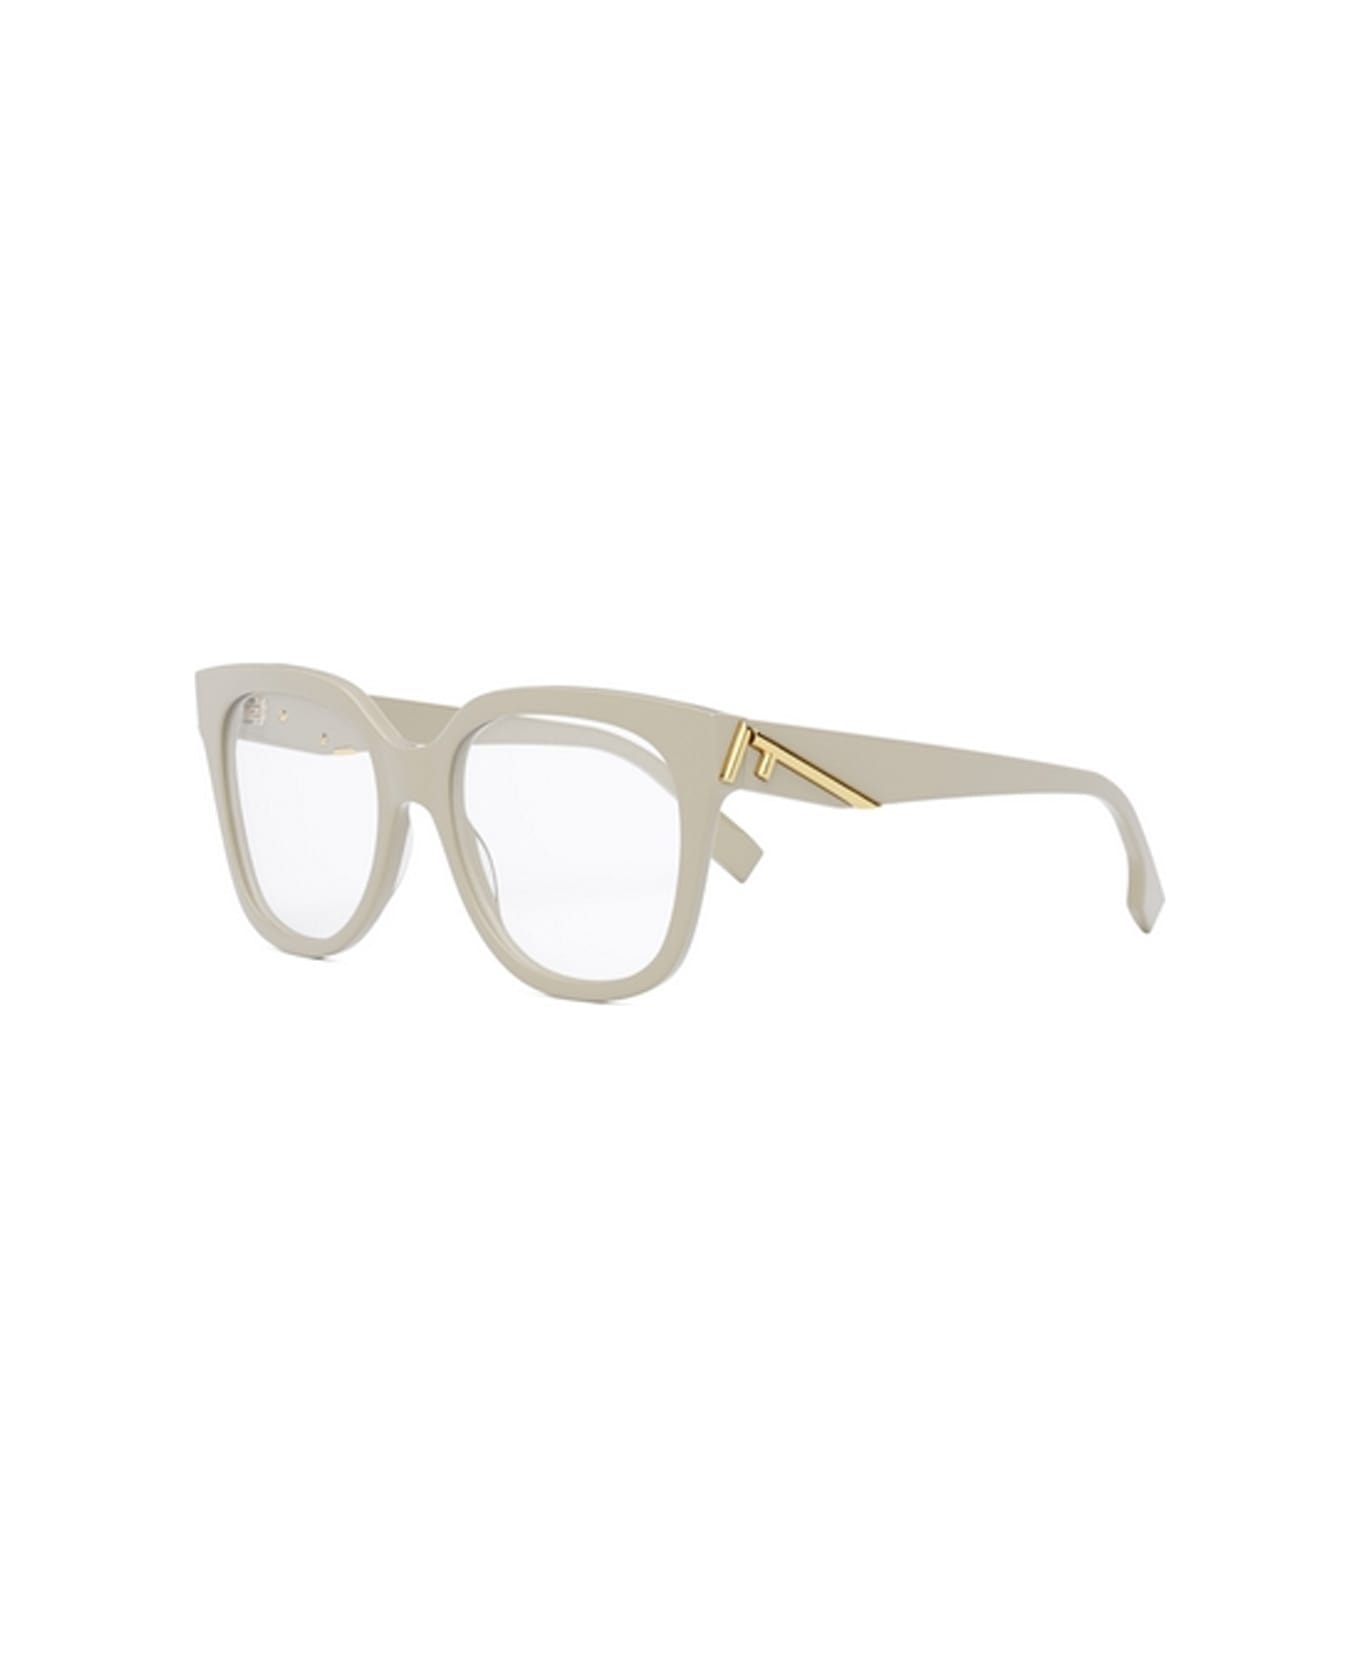 Fendi Eyewear Fe50064i 025 Glasses - Avorio アイウェア